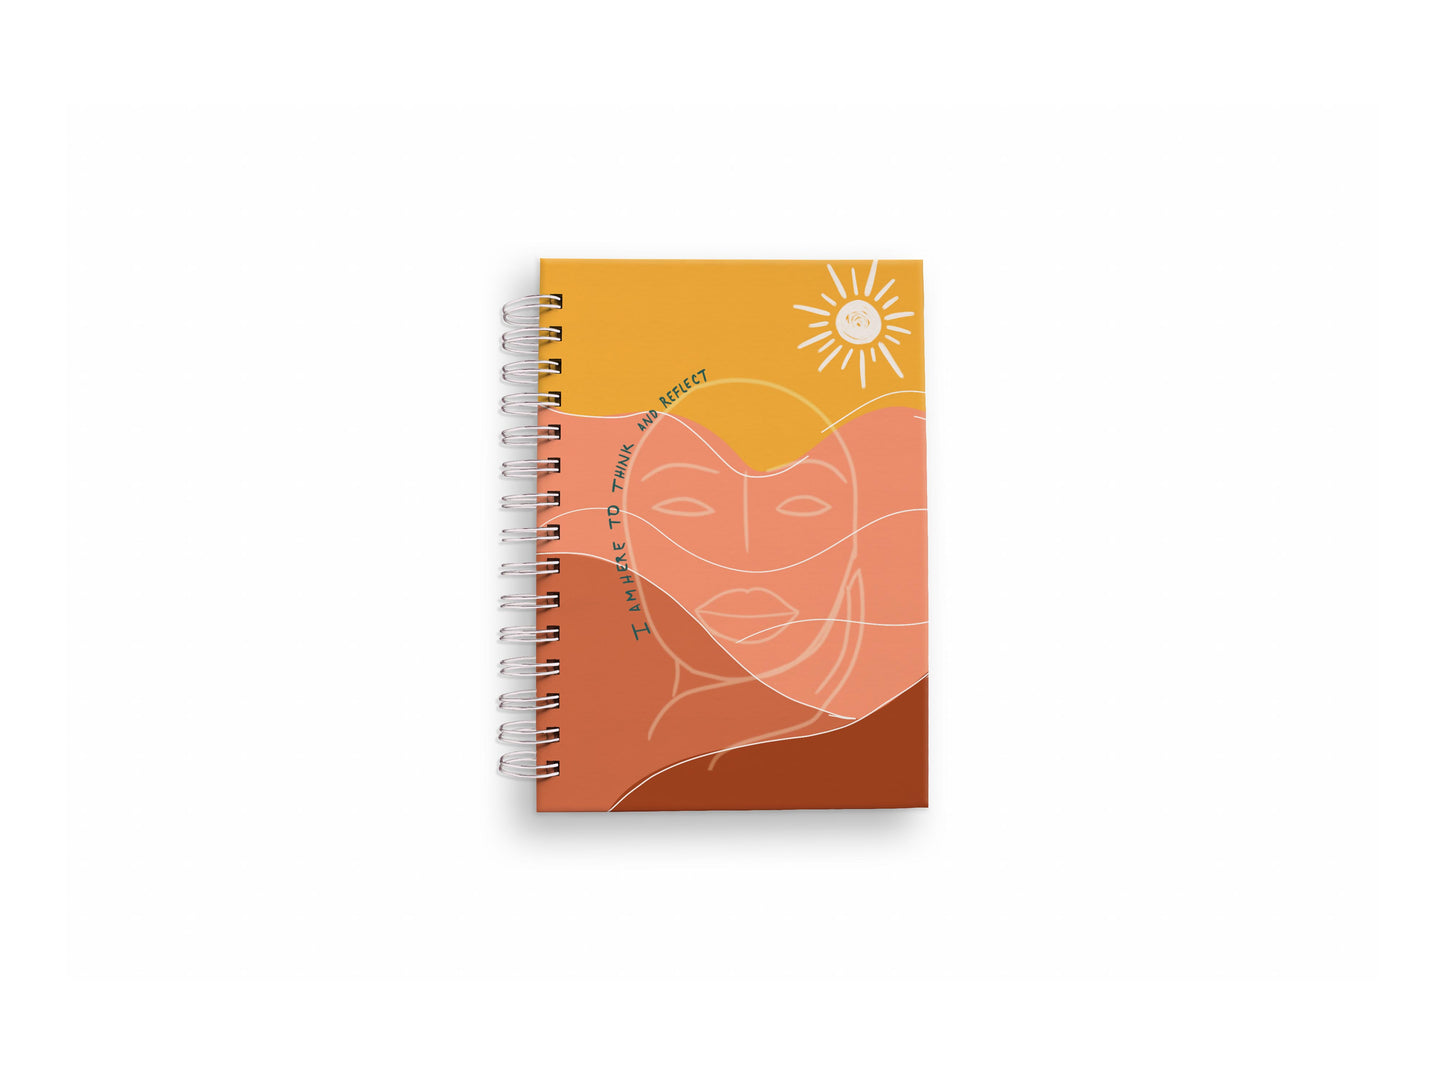 Woman in desert Notebook|Writer's Notebook| Writer's Journal | Reflection Journal